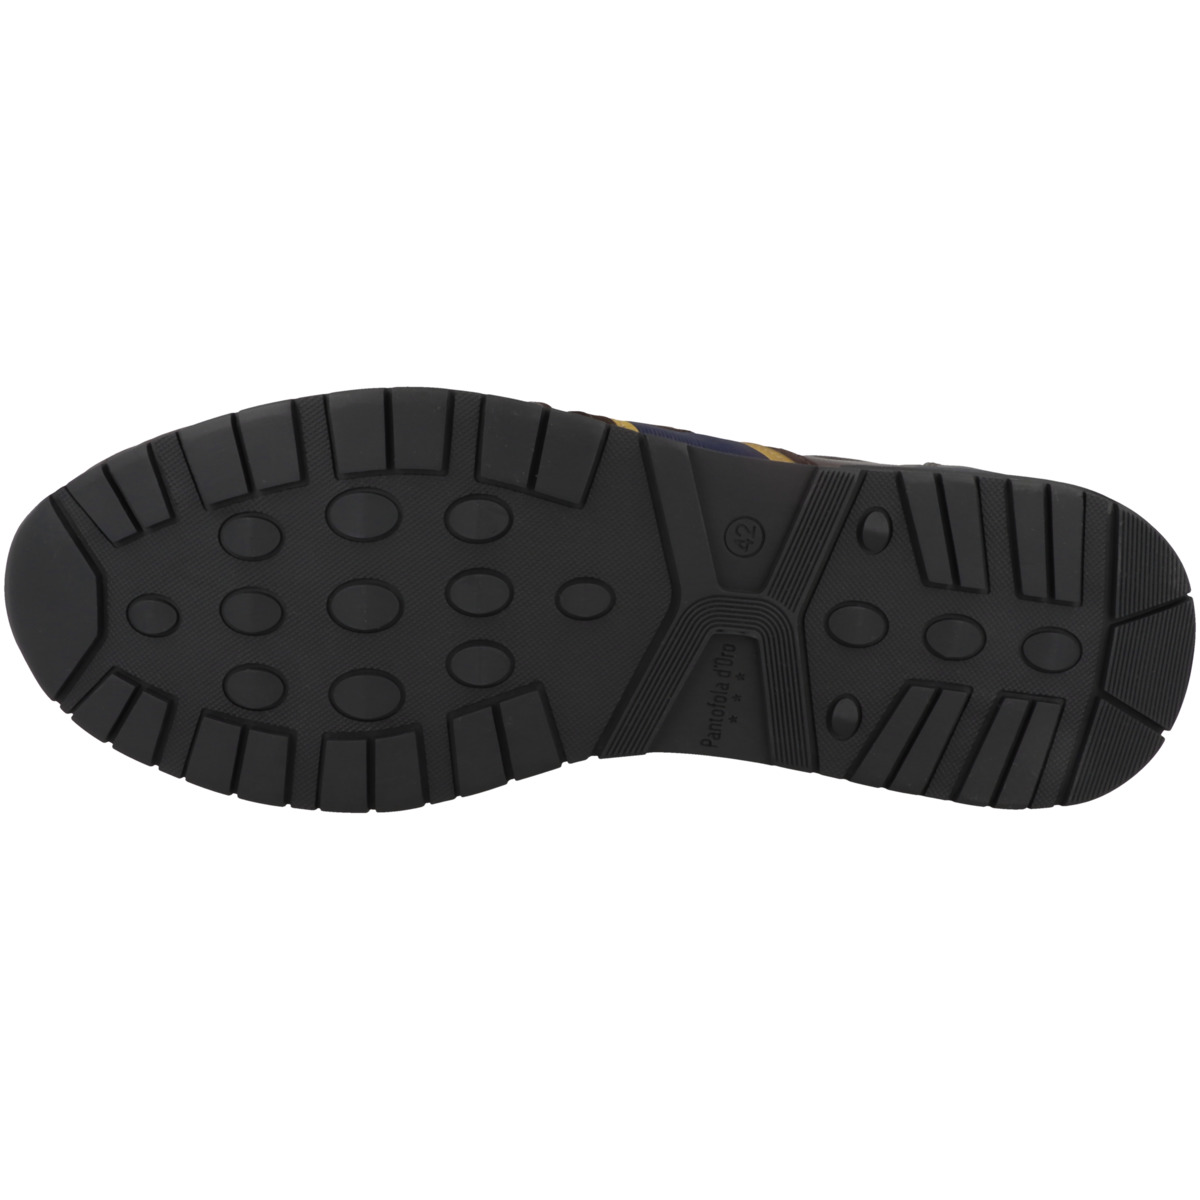 Pantofola d'Oro Sangano 2.0 Uomo Low Sneaker low